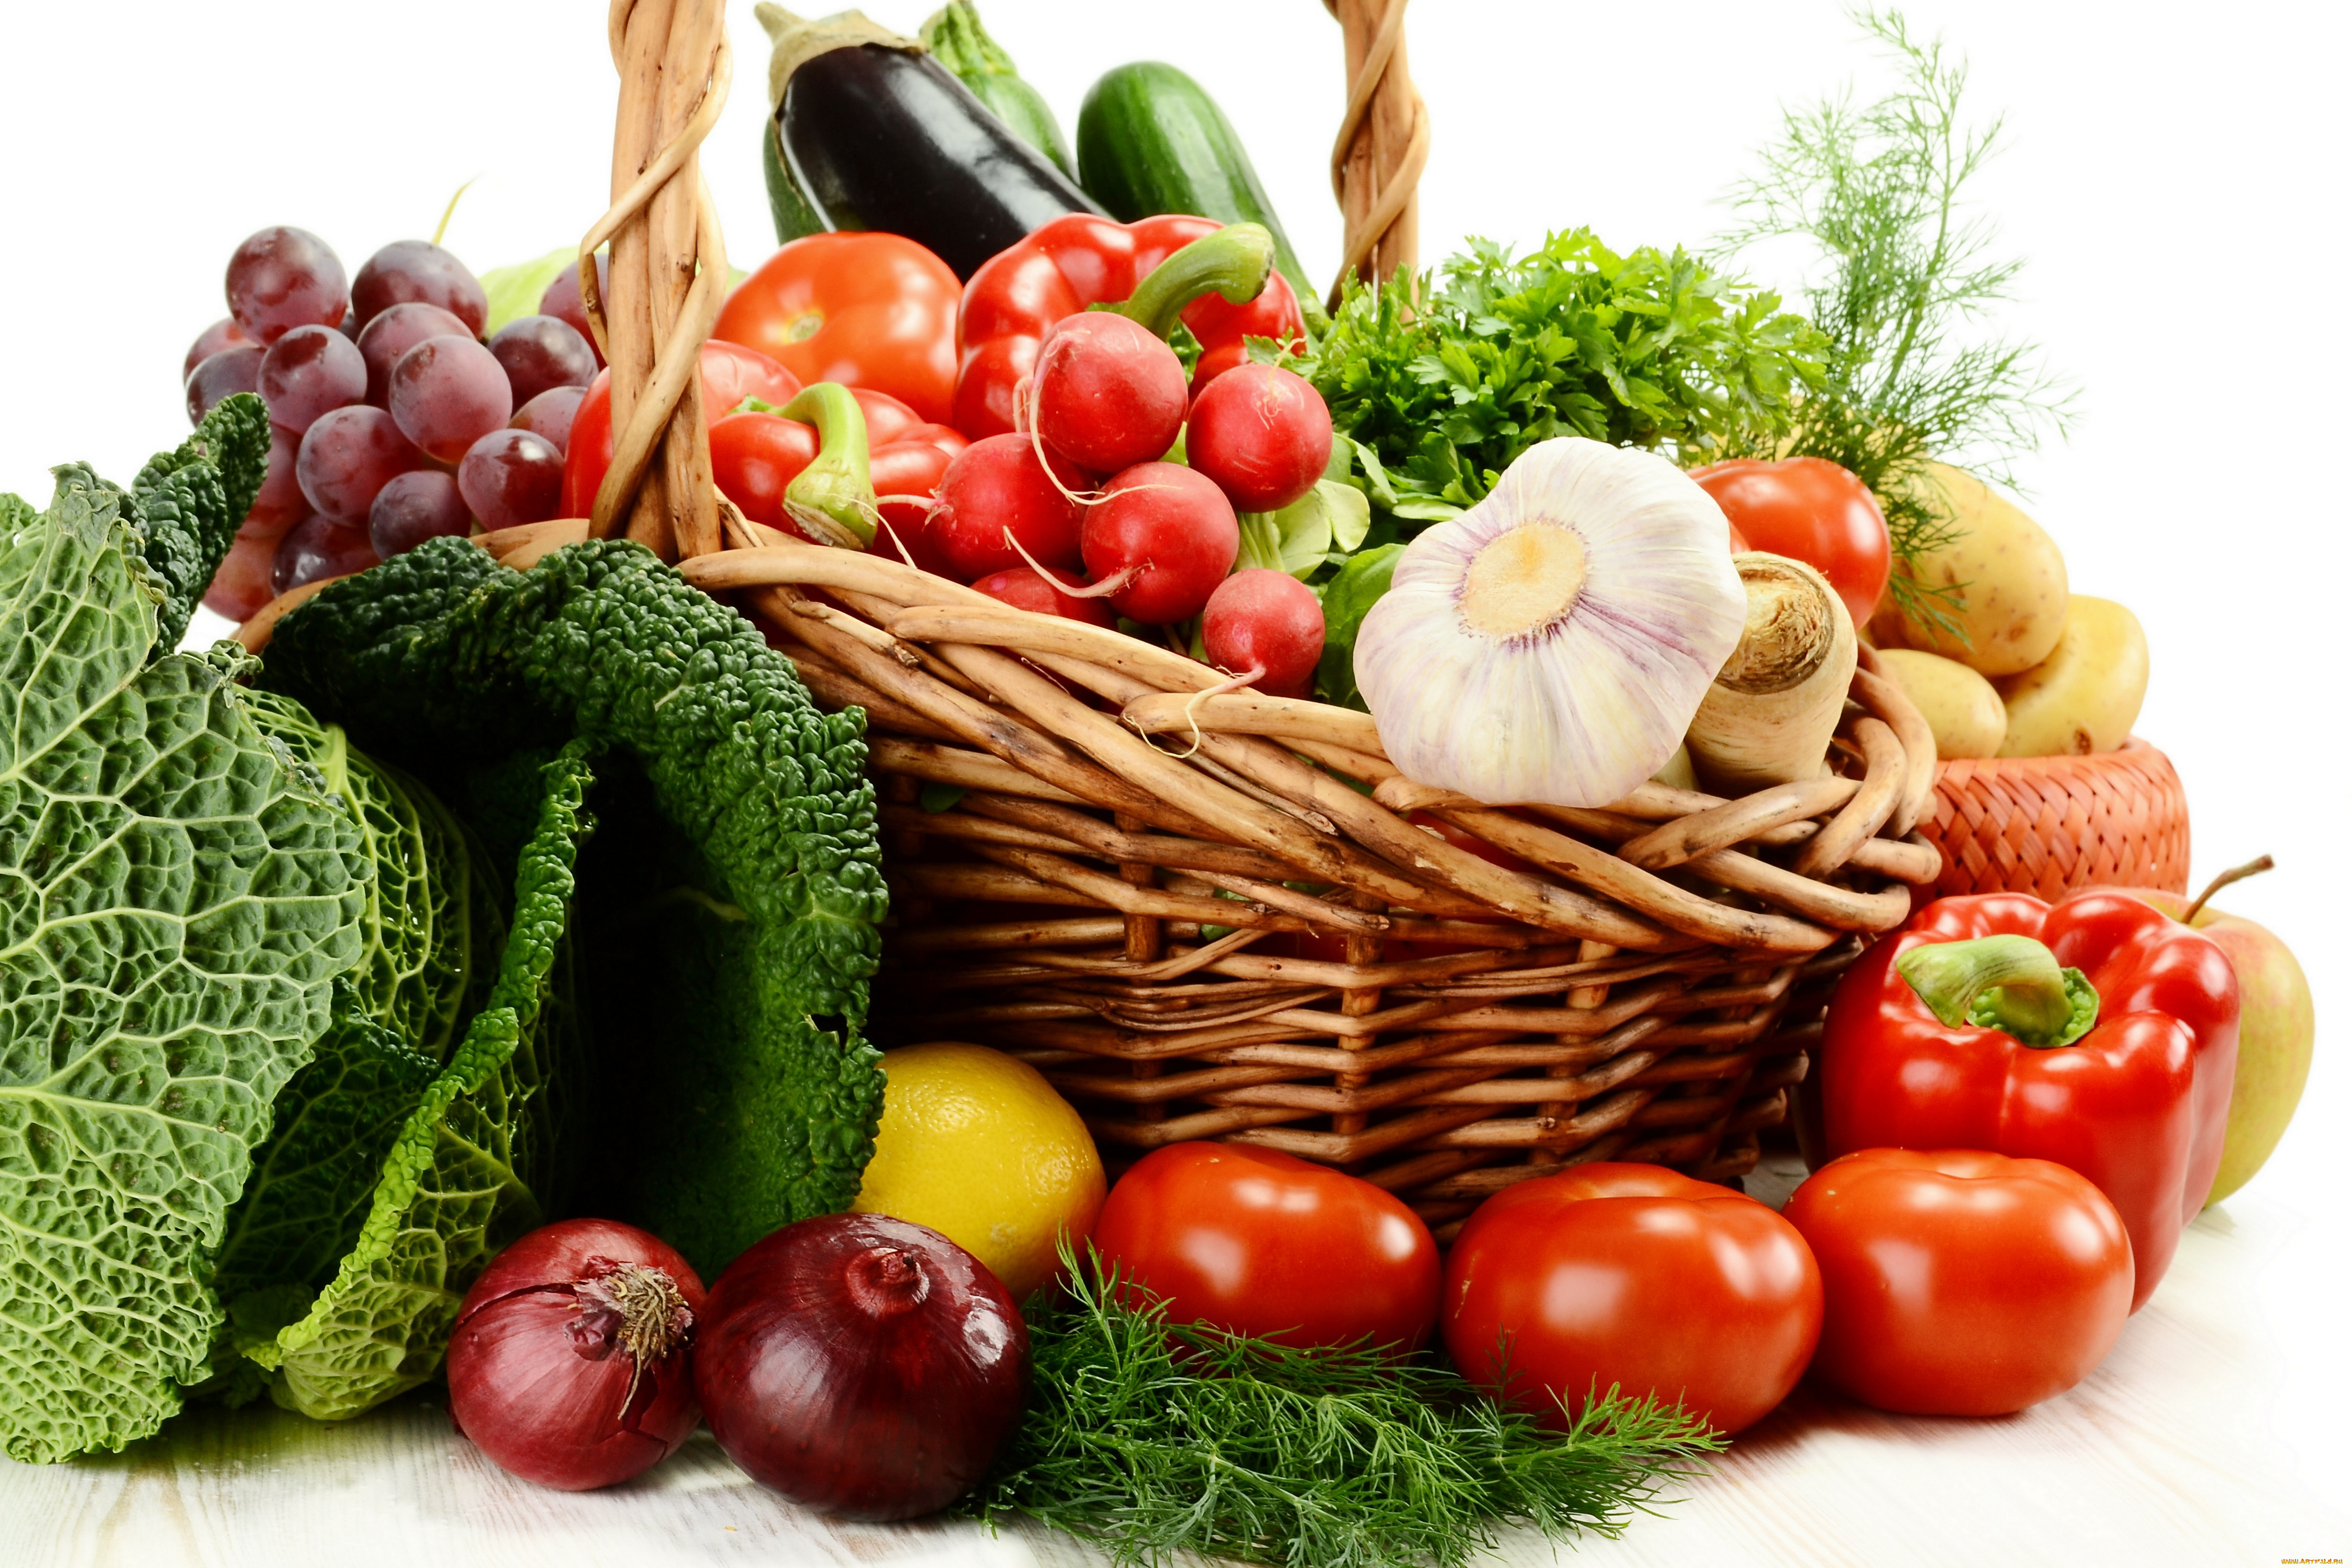 Плодовые товары. Овощи и фрукты. Урожай овощей и фруктов. Корзинка с овощами. Корзинка с овощами и фруктами.